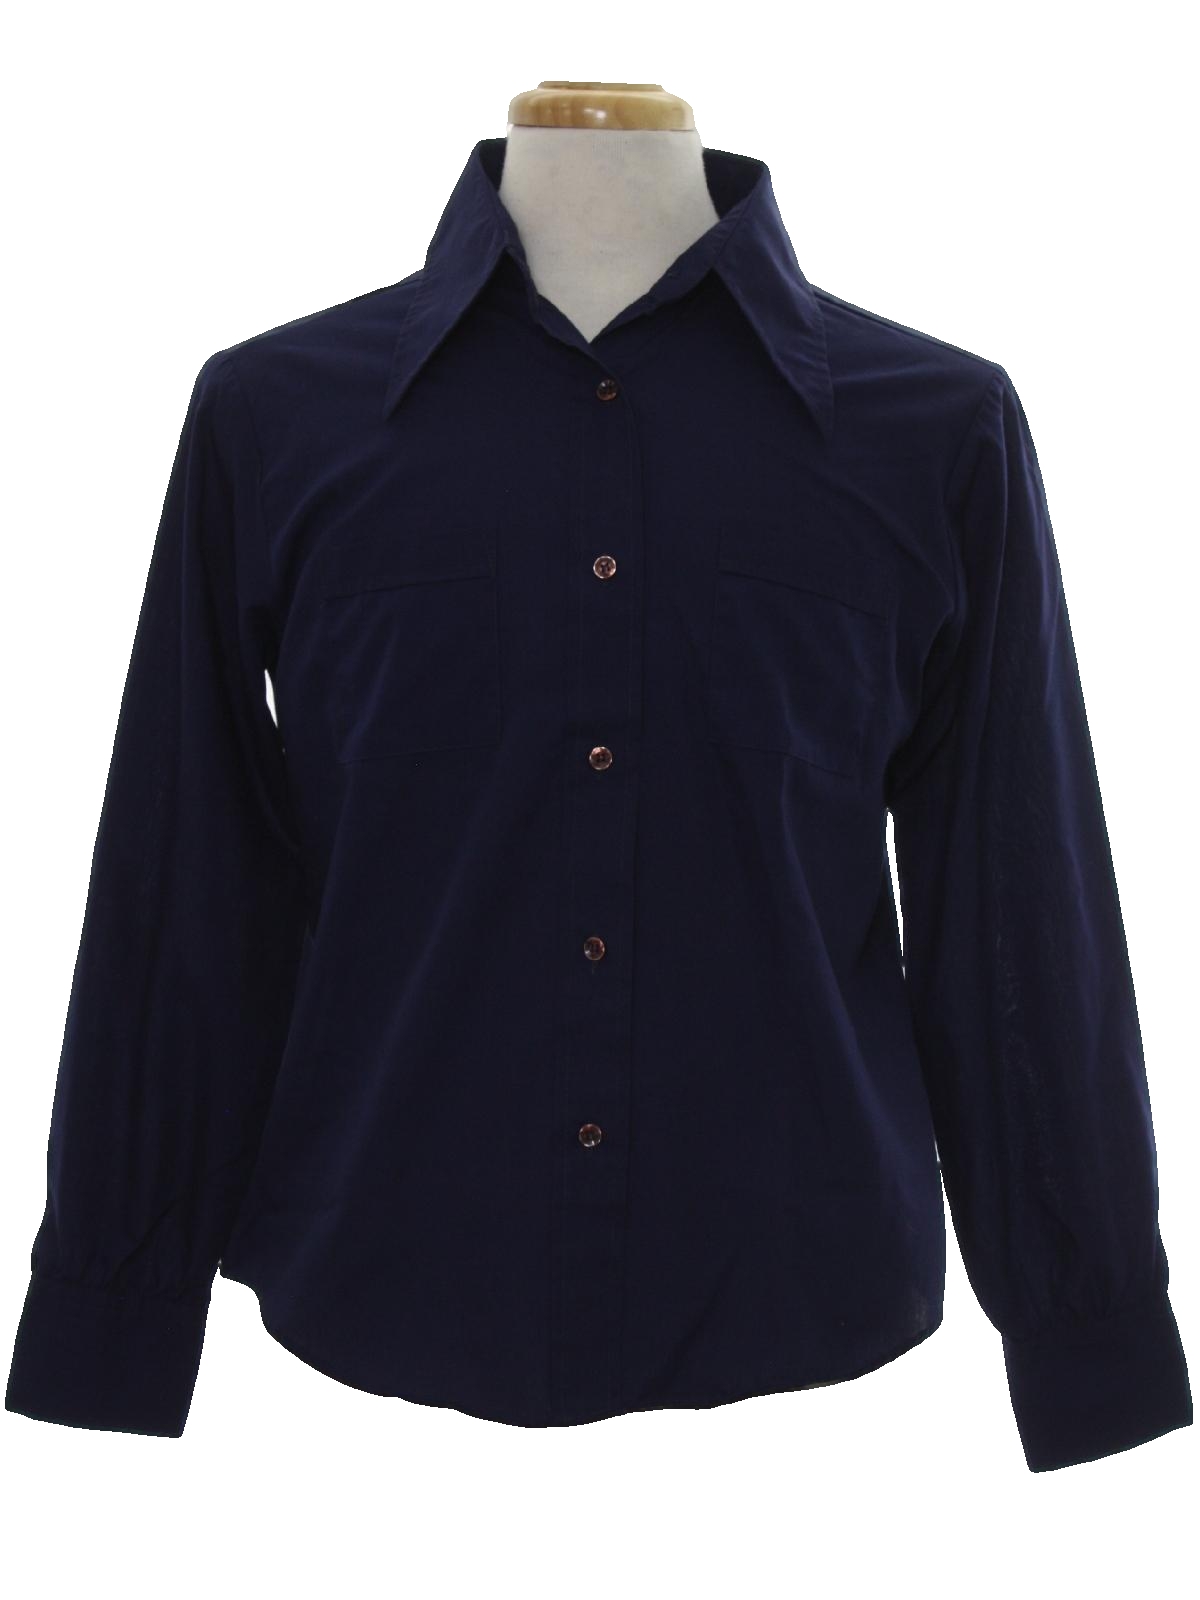 Vintage Sears Seventies Shirt: 70s -Sears- Mens dark navy blue ...